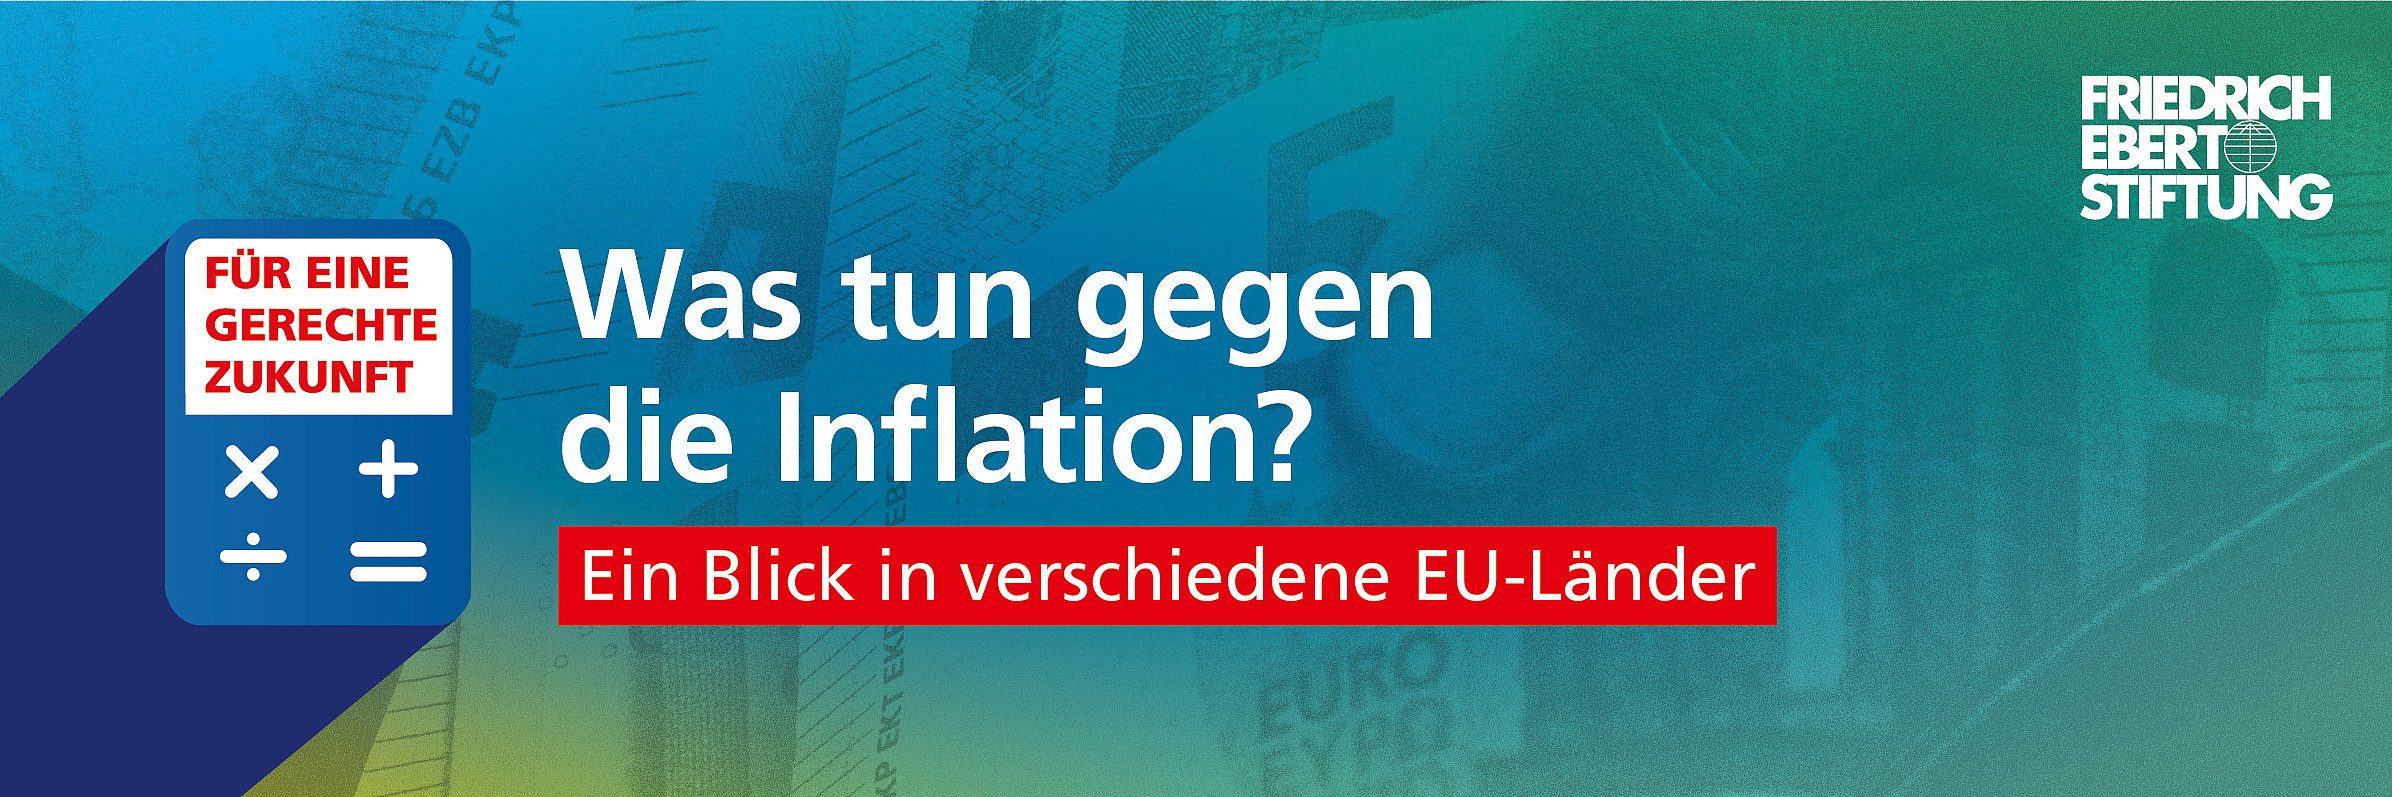 Blau-grün-gelb verwischter Hintergrund. Darauf der weiße Schriftzug "Was tun gegen die Inflation? Ein Blick in verschiedene EU-Länder".